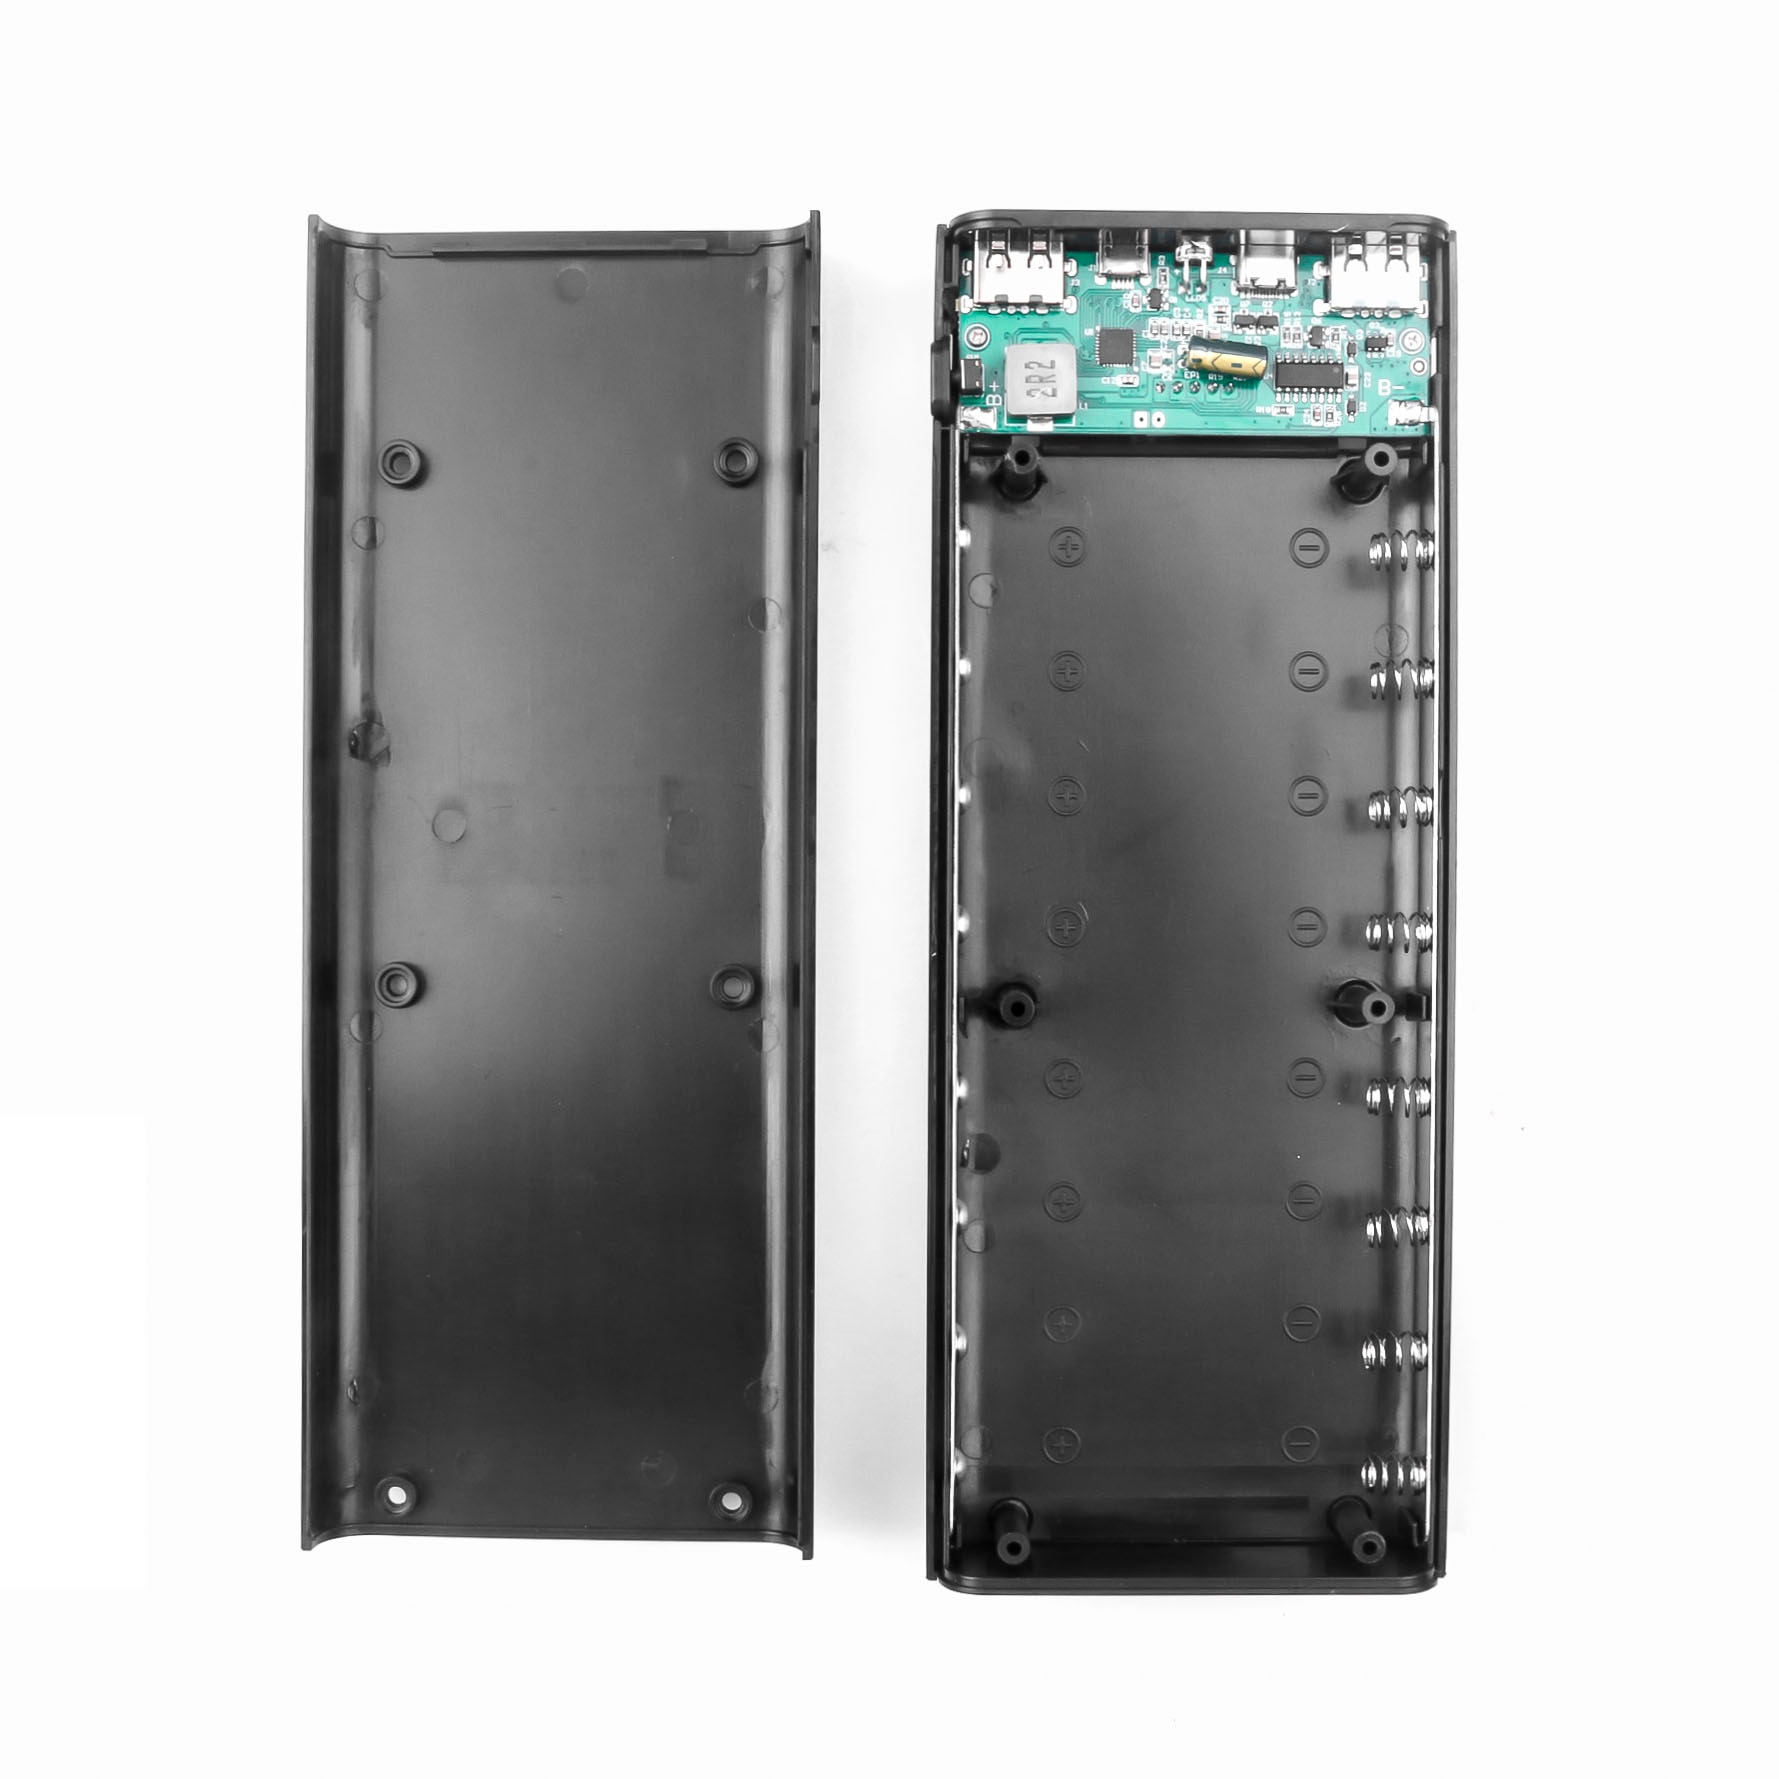 8X18650 Battery Case Power Bank Case Batterij Oplader Supply Voor Mobiele Telefoons 5V Dual Usb Type C Voor Telefoon opladen Doos